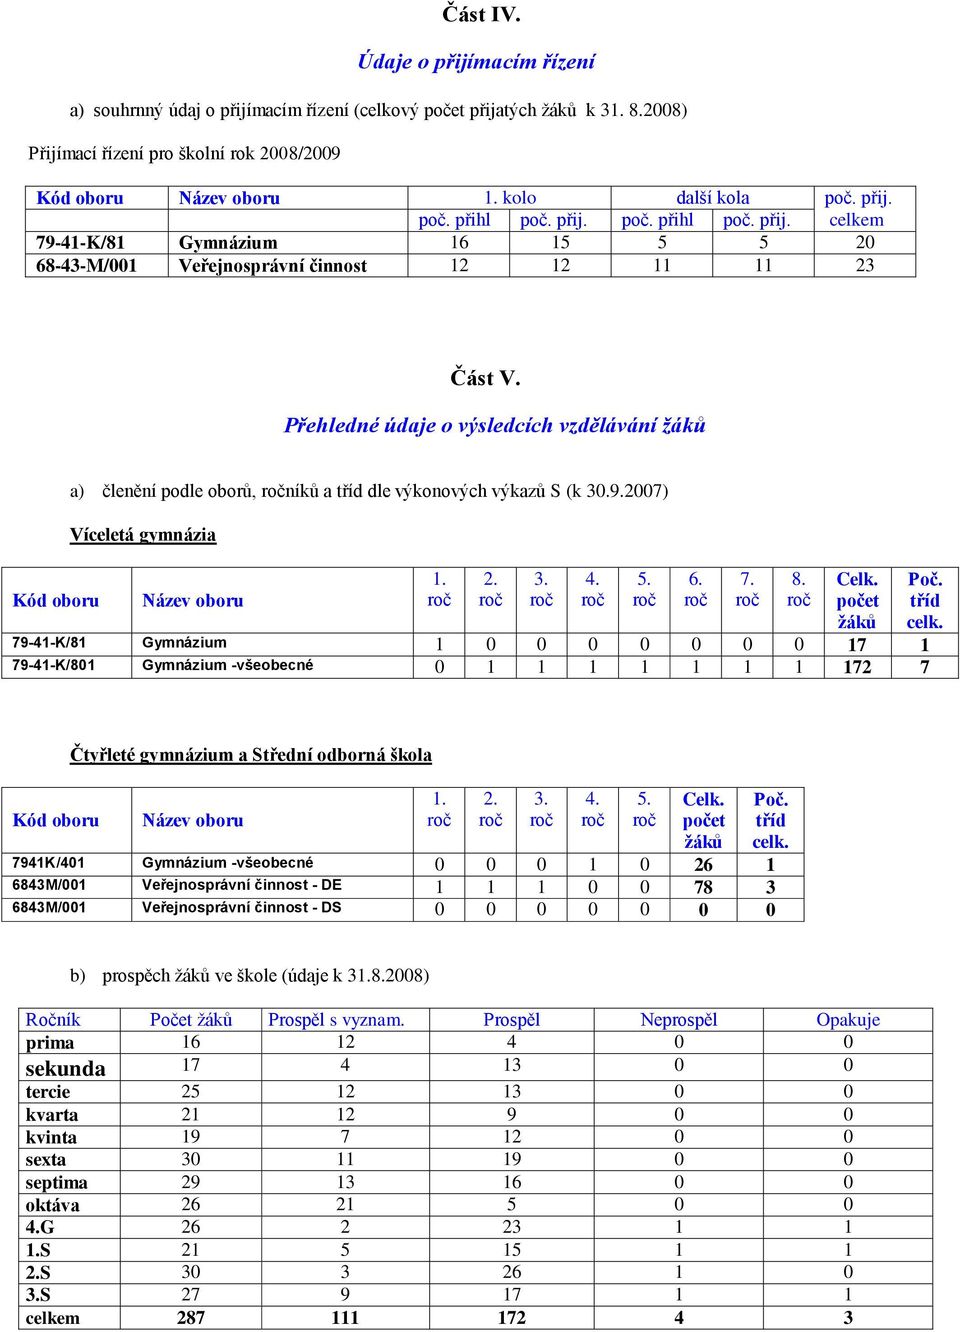 Přehledné údaje o výsledcích vzdělávání žáků Kód oboru a) členění podle oborů, níků a tříd dle výkonových výkazů S (k 30.9.2007) Víceletá gymnázia Název oboru 1. 2. 3. 4. 5. 6. 7. 8. Celk.